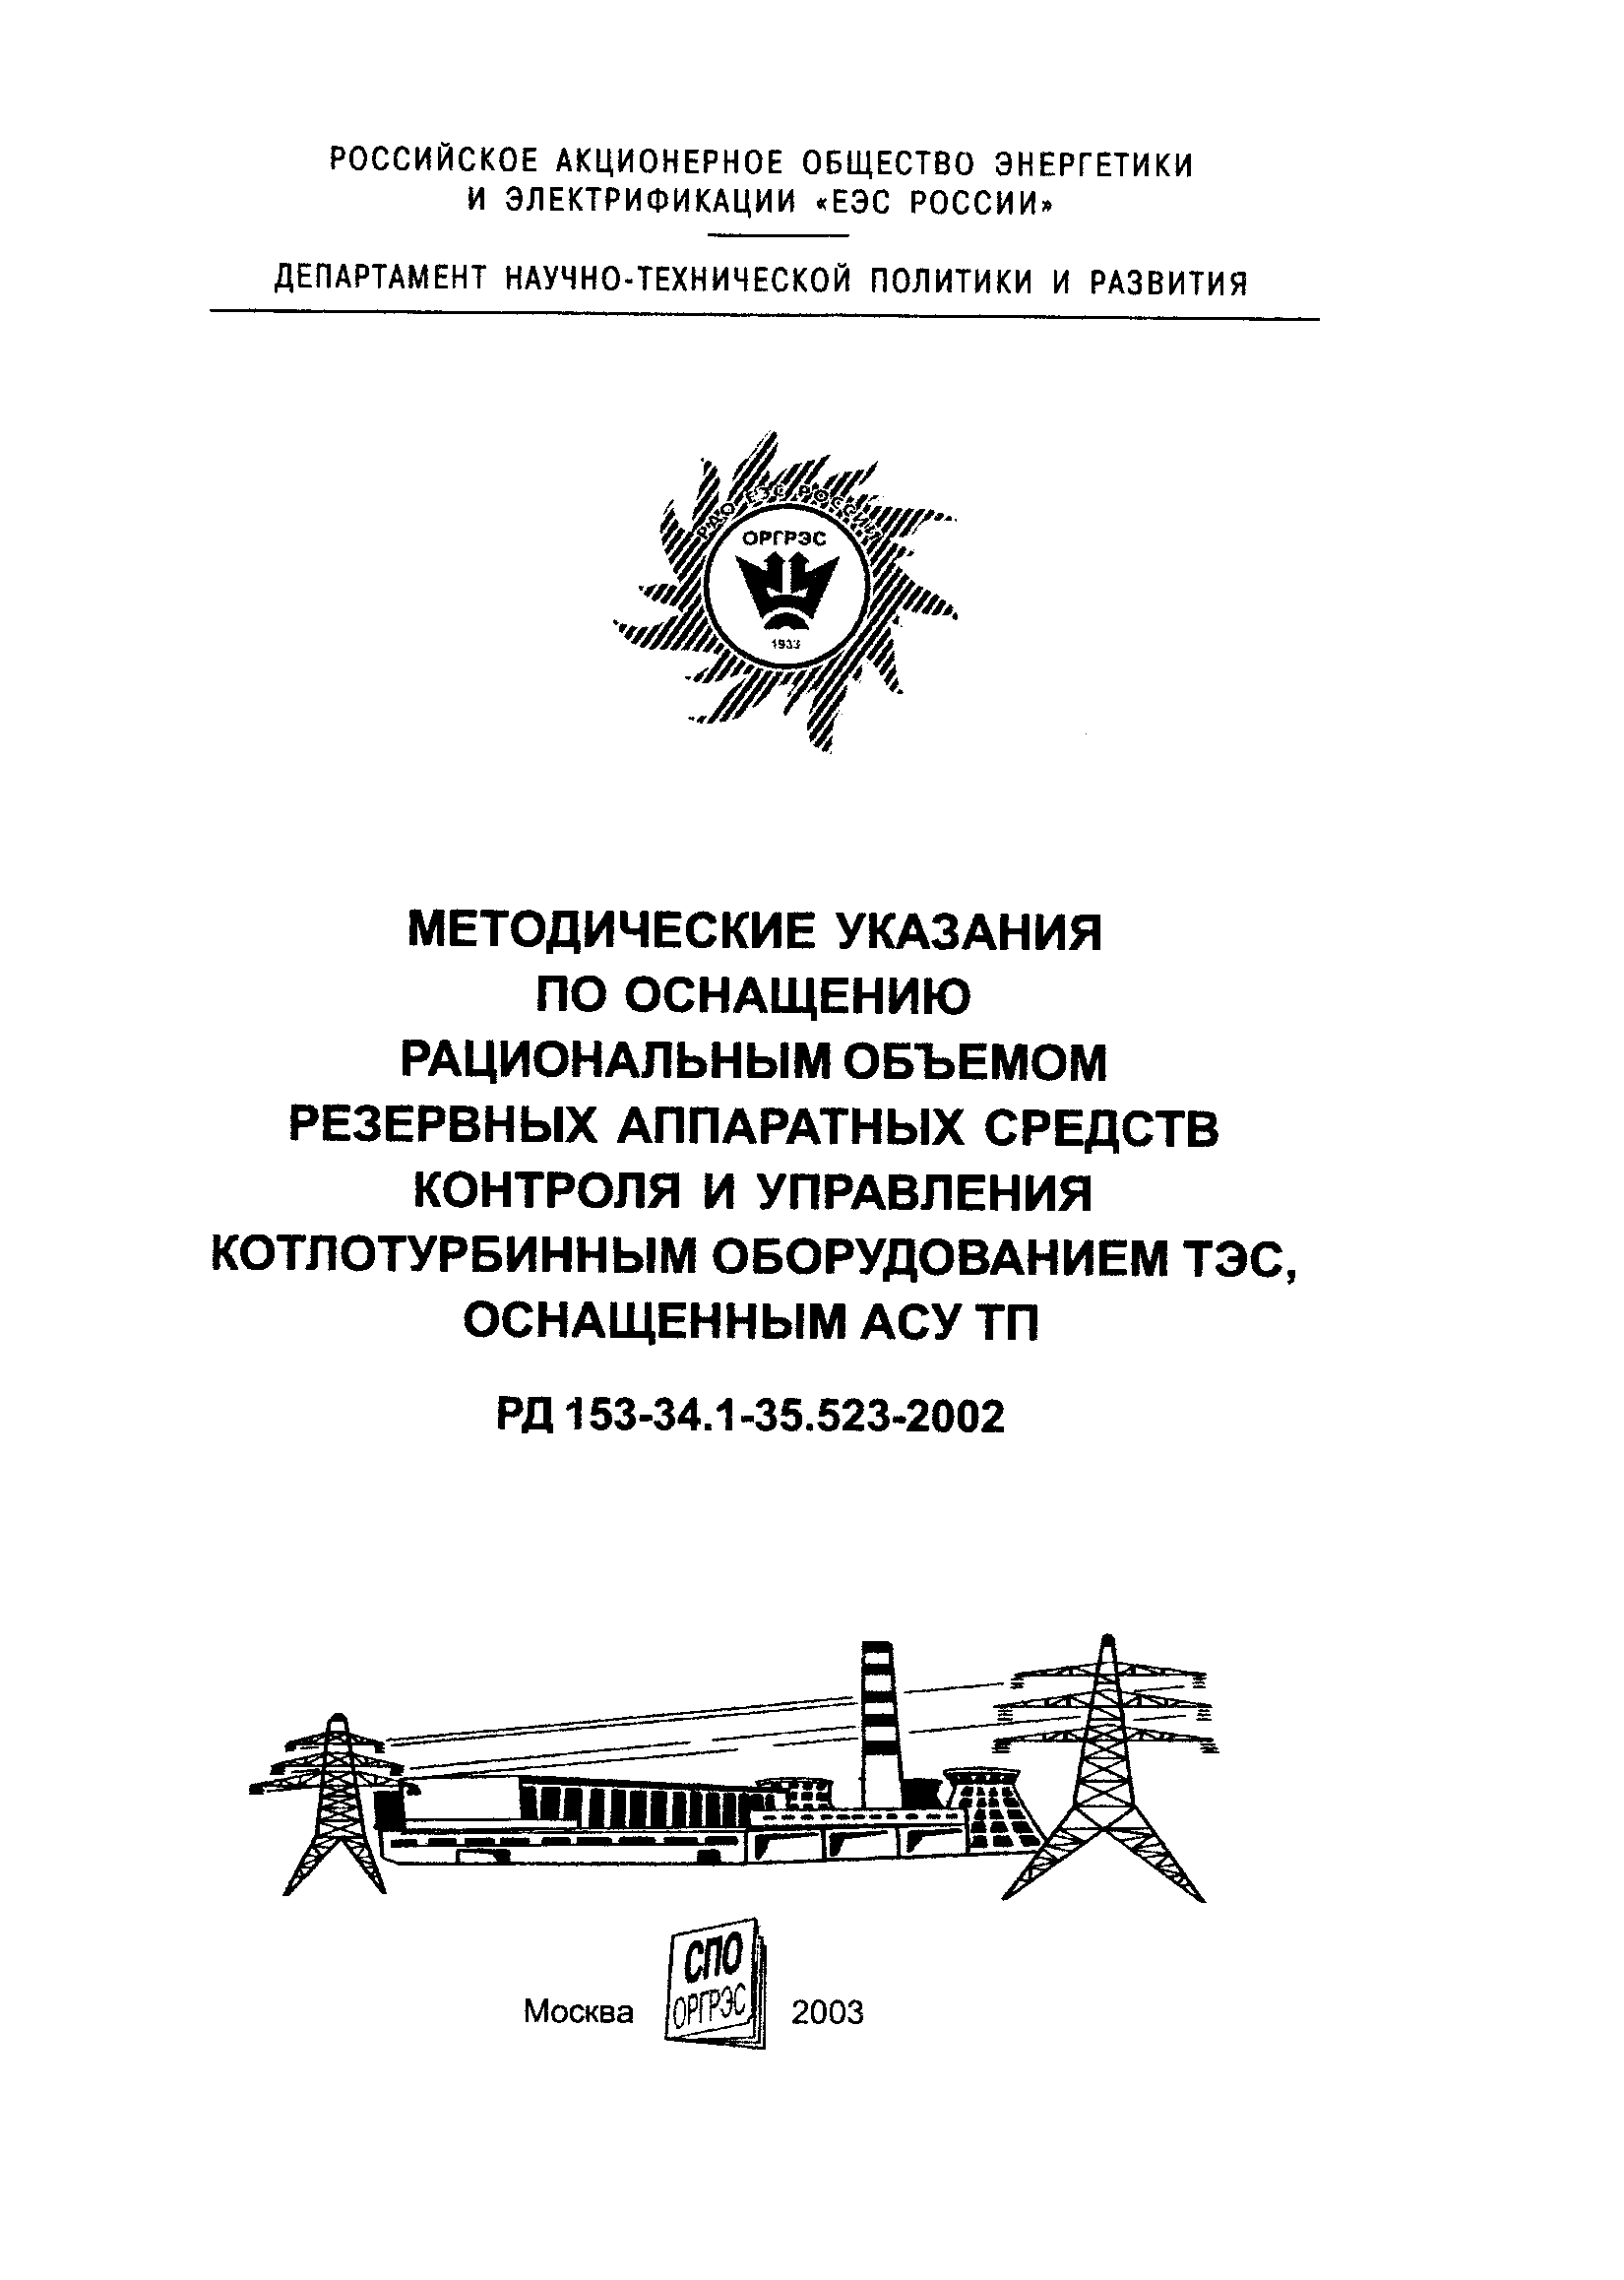 РД 153-34.1-35.523-2002